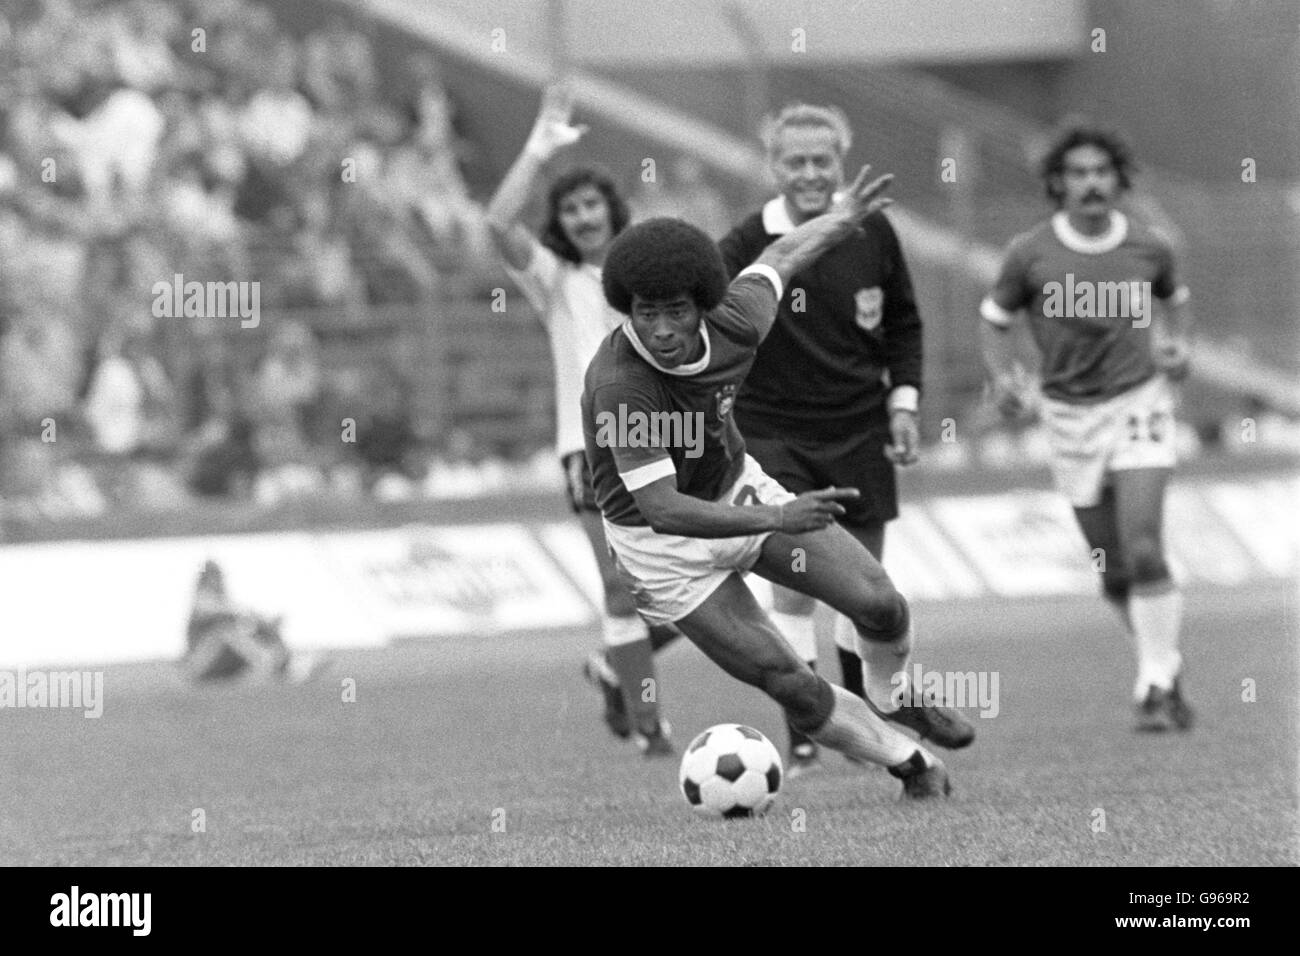 Soccer - 1974 World Cup, West Germany - Brazil v Argentina. Jairzinho, Brazil Stock Photo